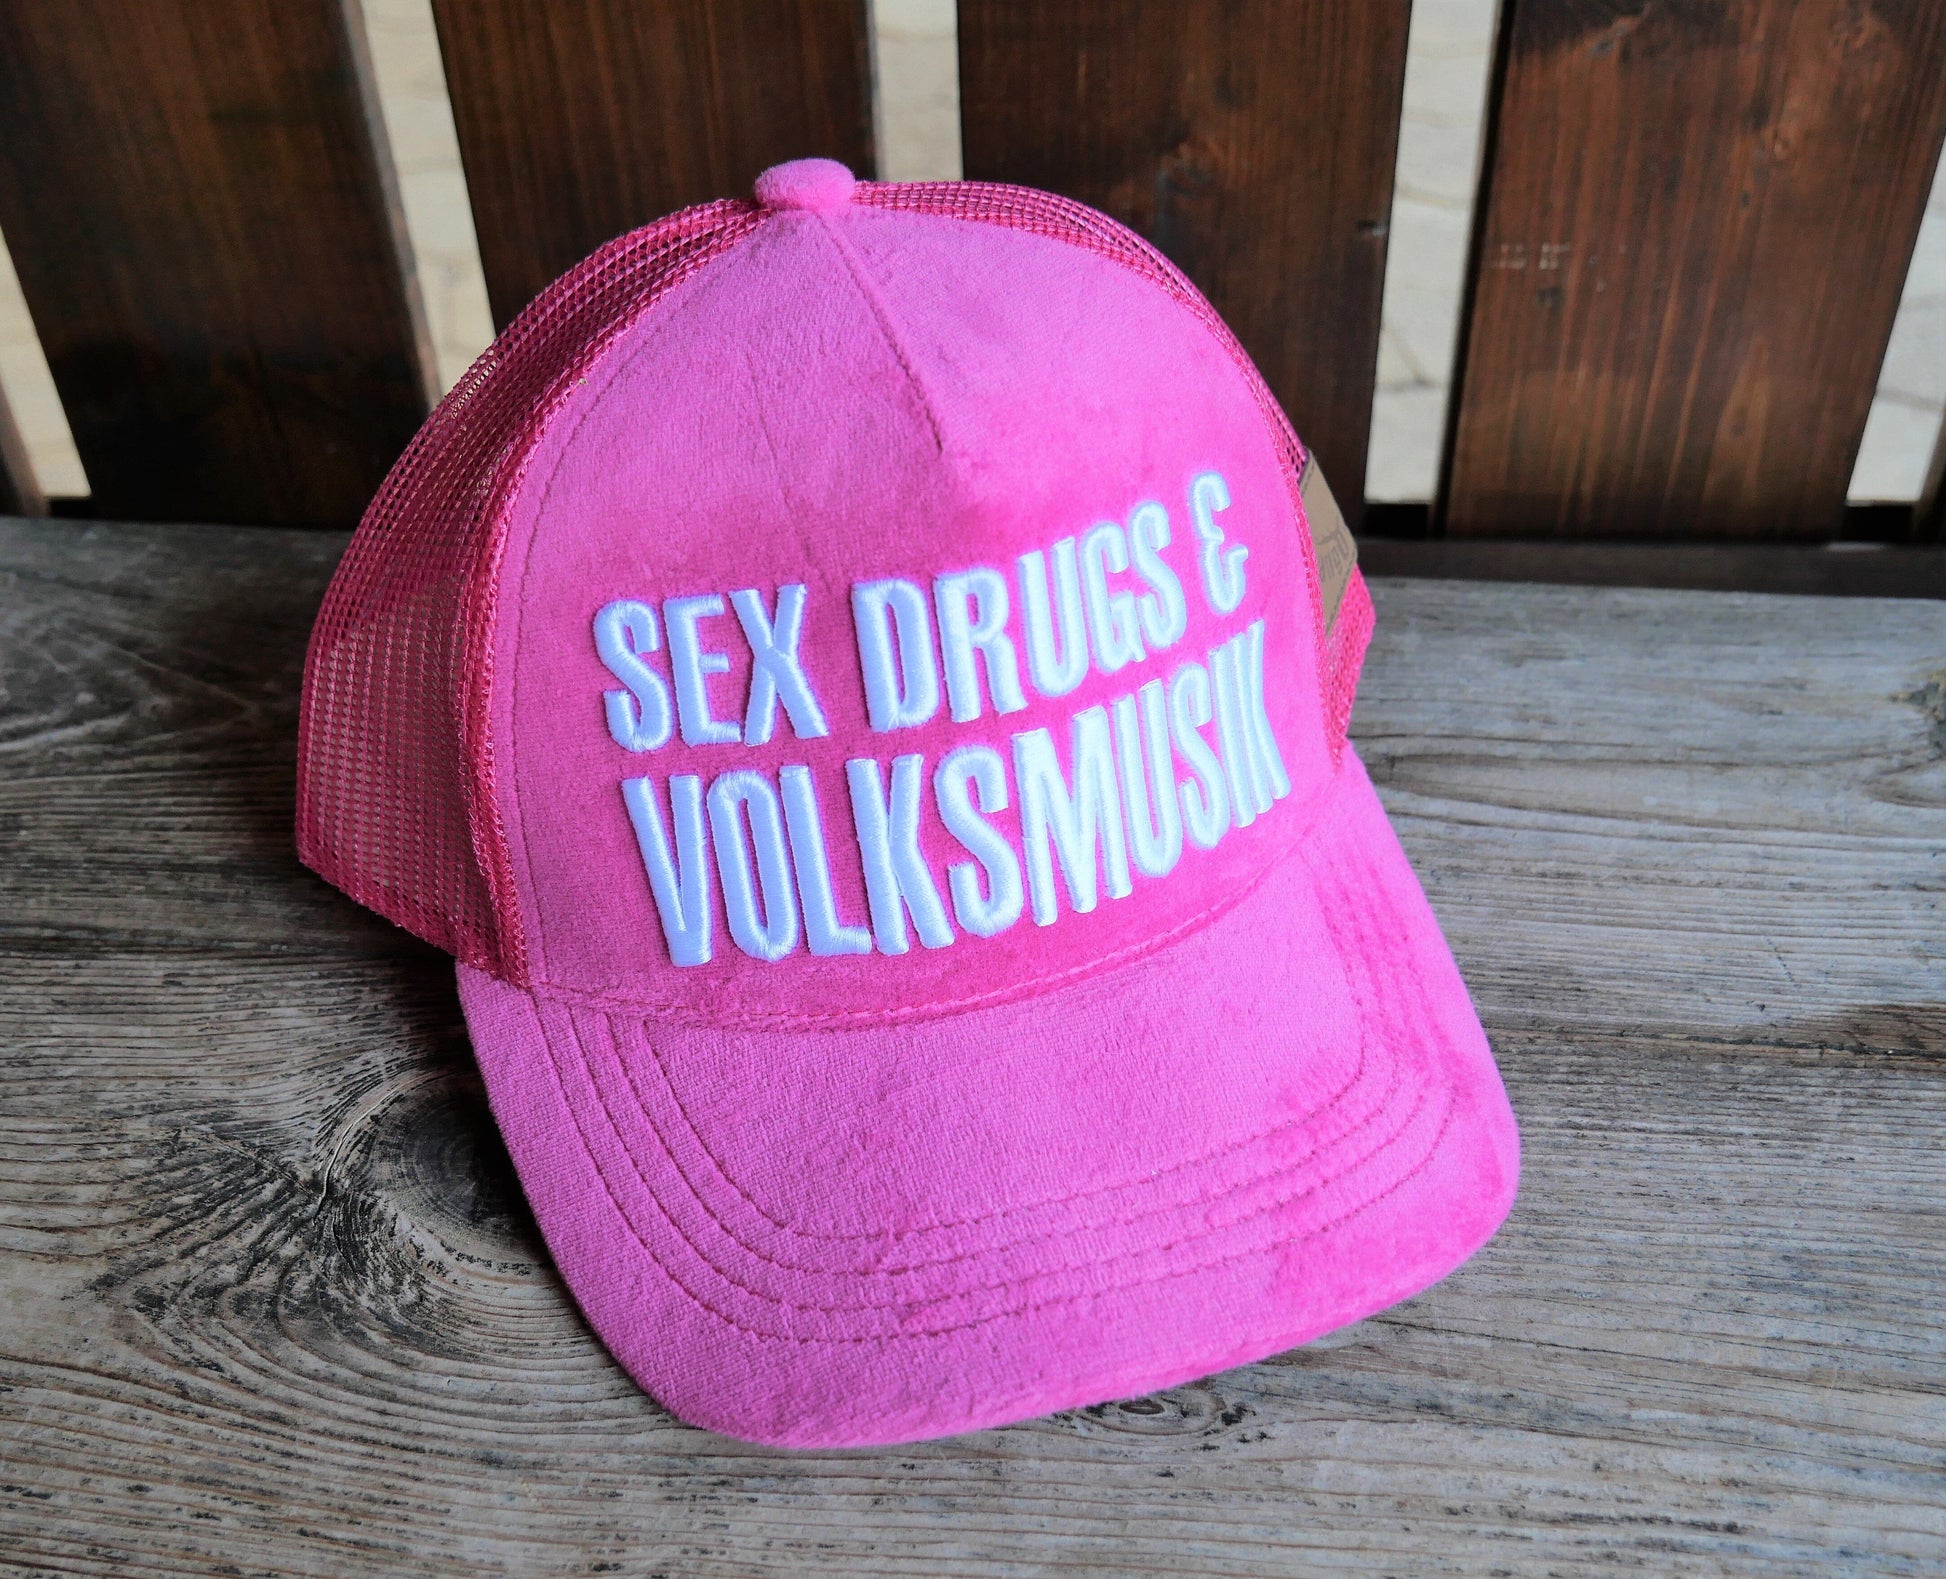 Trachten Cap, Kappi, Hangowear, Volksmusik, pink Kopfbedeckung HangOwear 